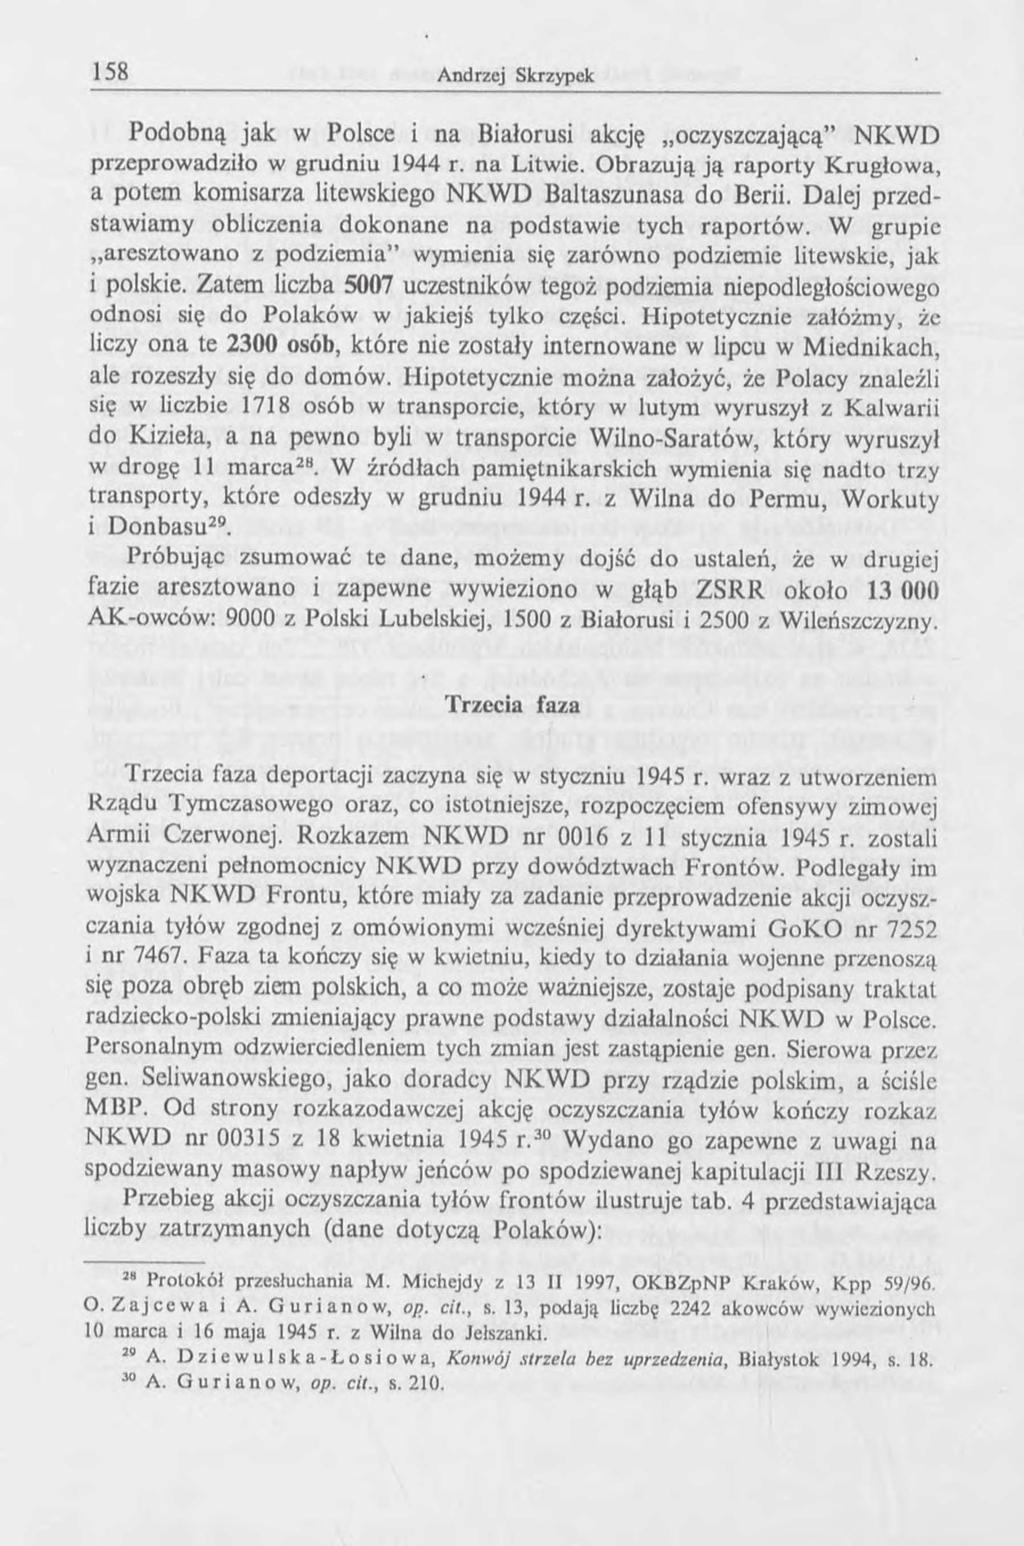 Podobną jak w Polsce i na Białorusi akcję oczyszczającą NKW D przeprowadziło w grudniu 1944 r. na Litwie. Obrazują ją raporty Krugłowa, a potem kom isarza litewskiego N K W D Baltaszunasa do Berii.